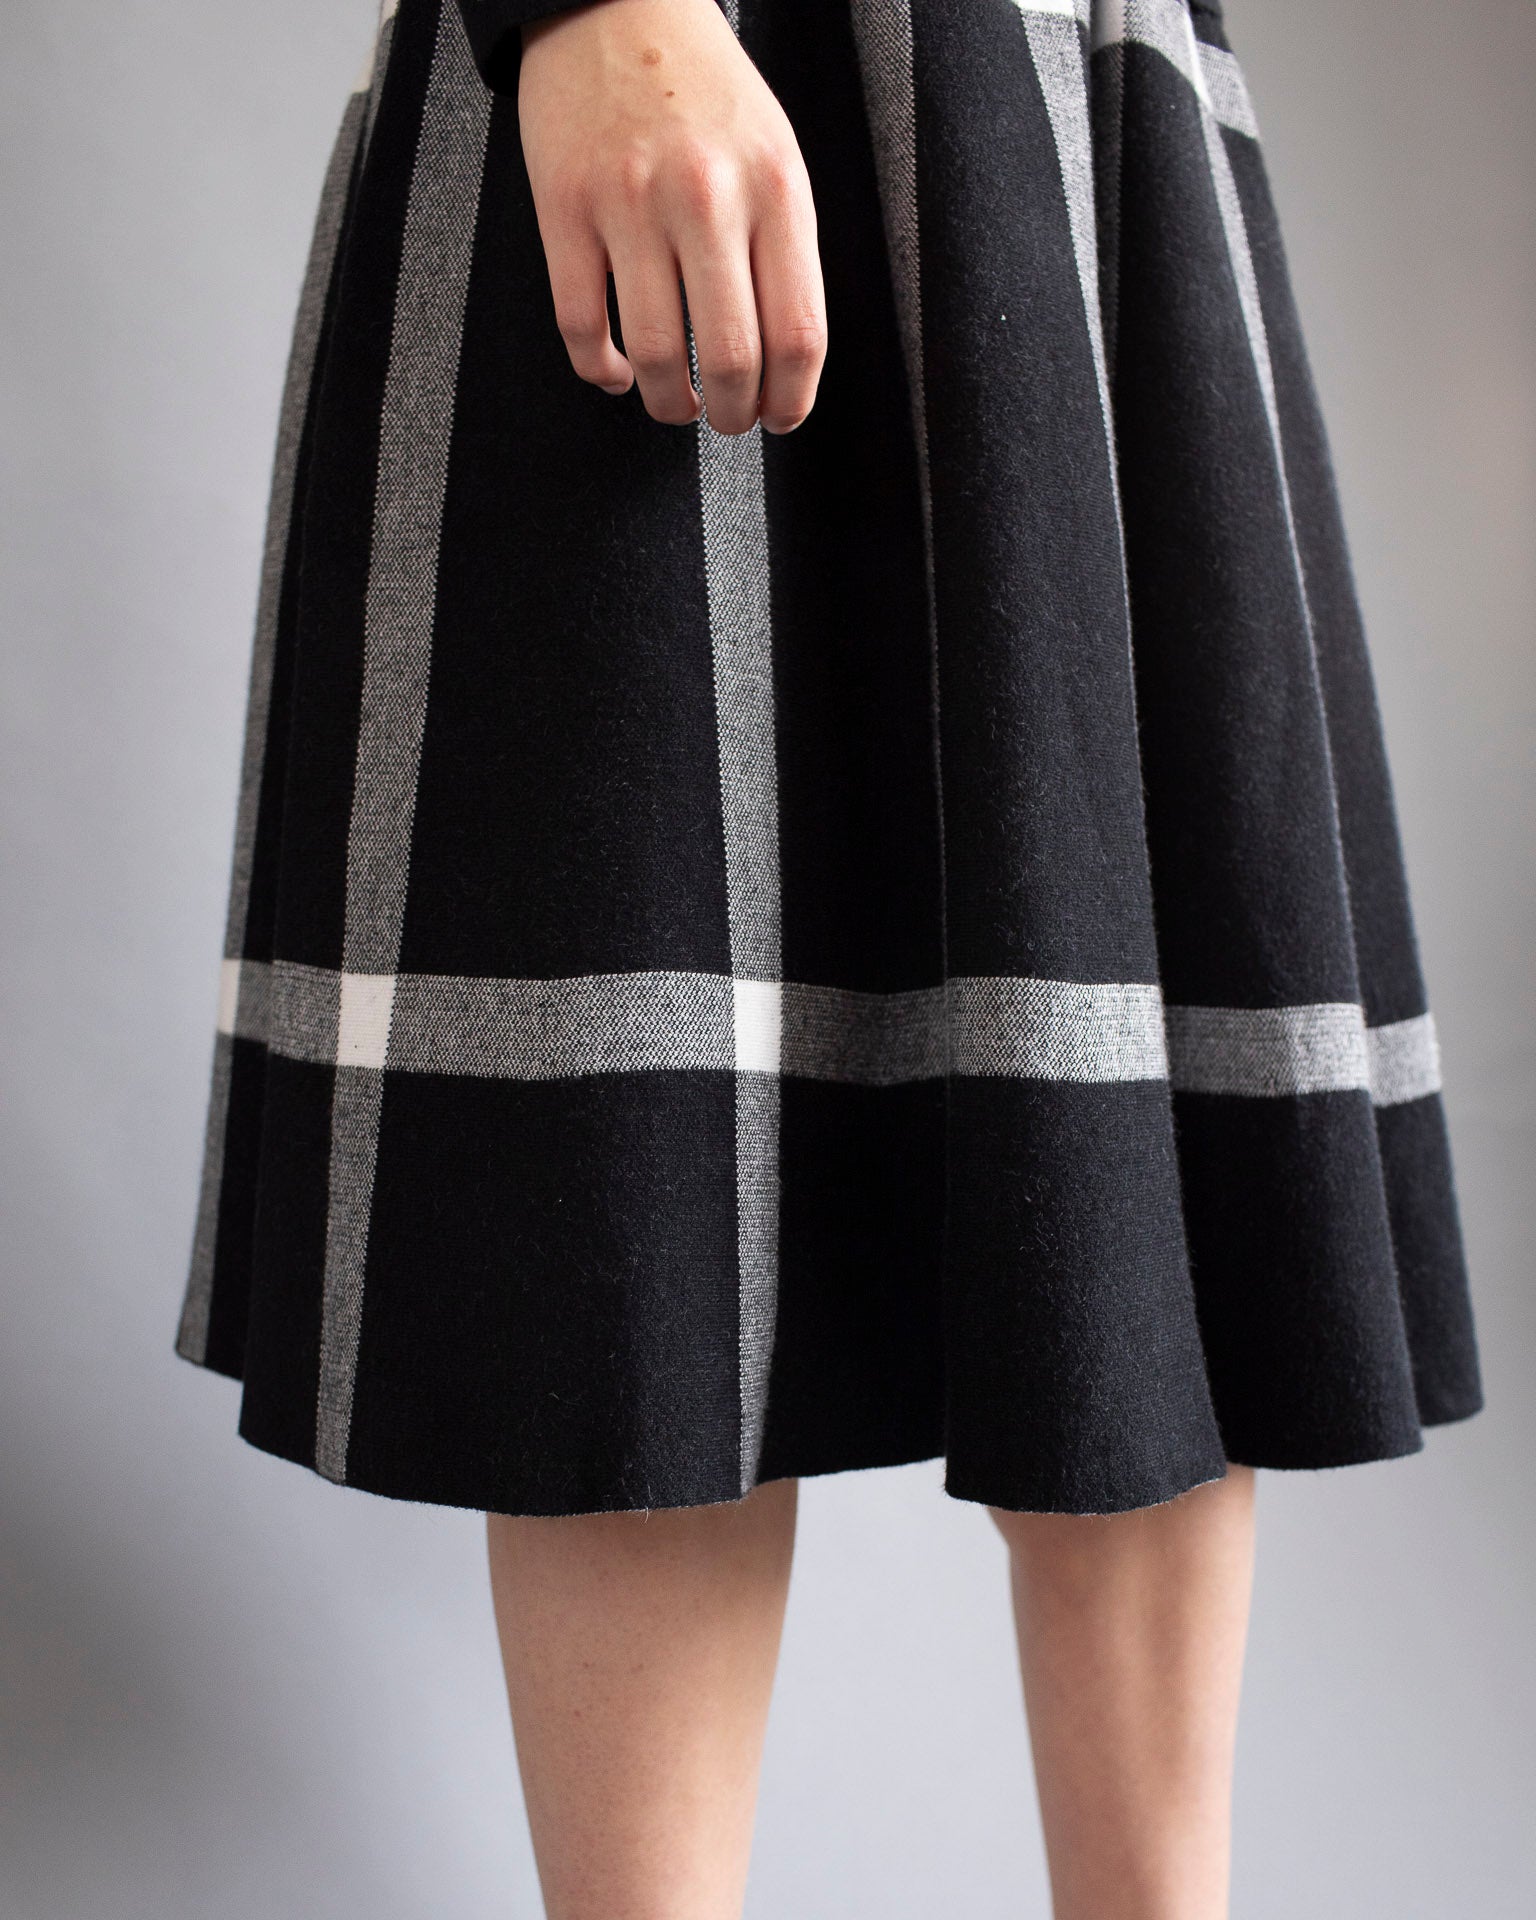 mid skirt black and white